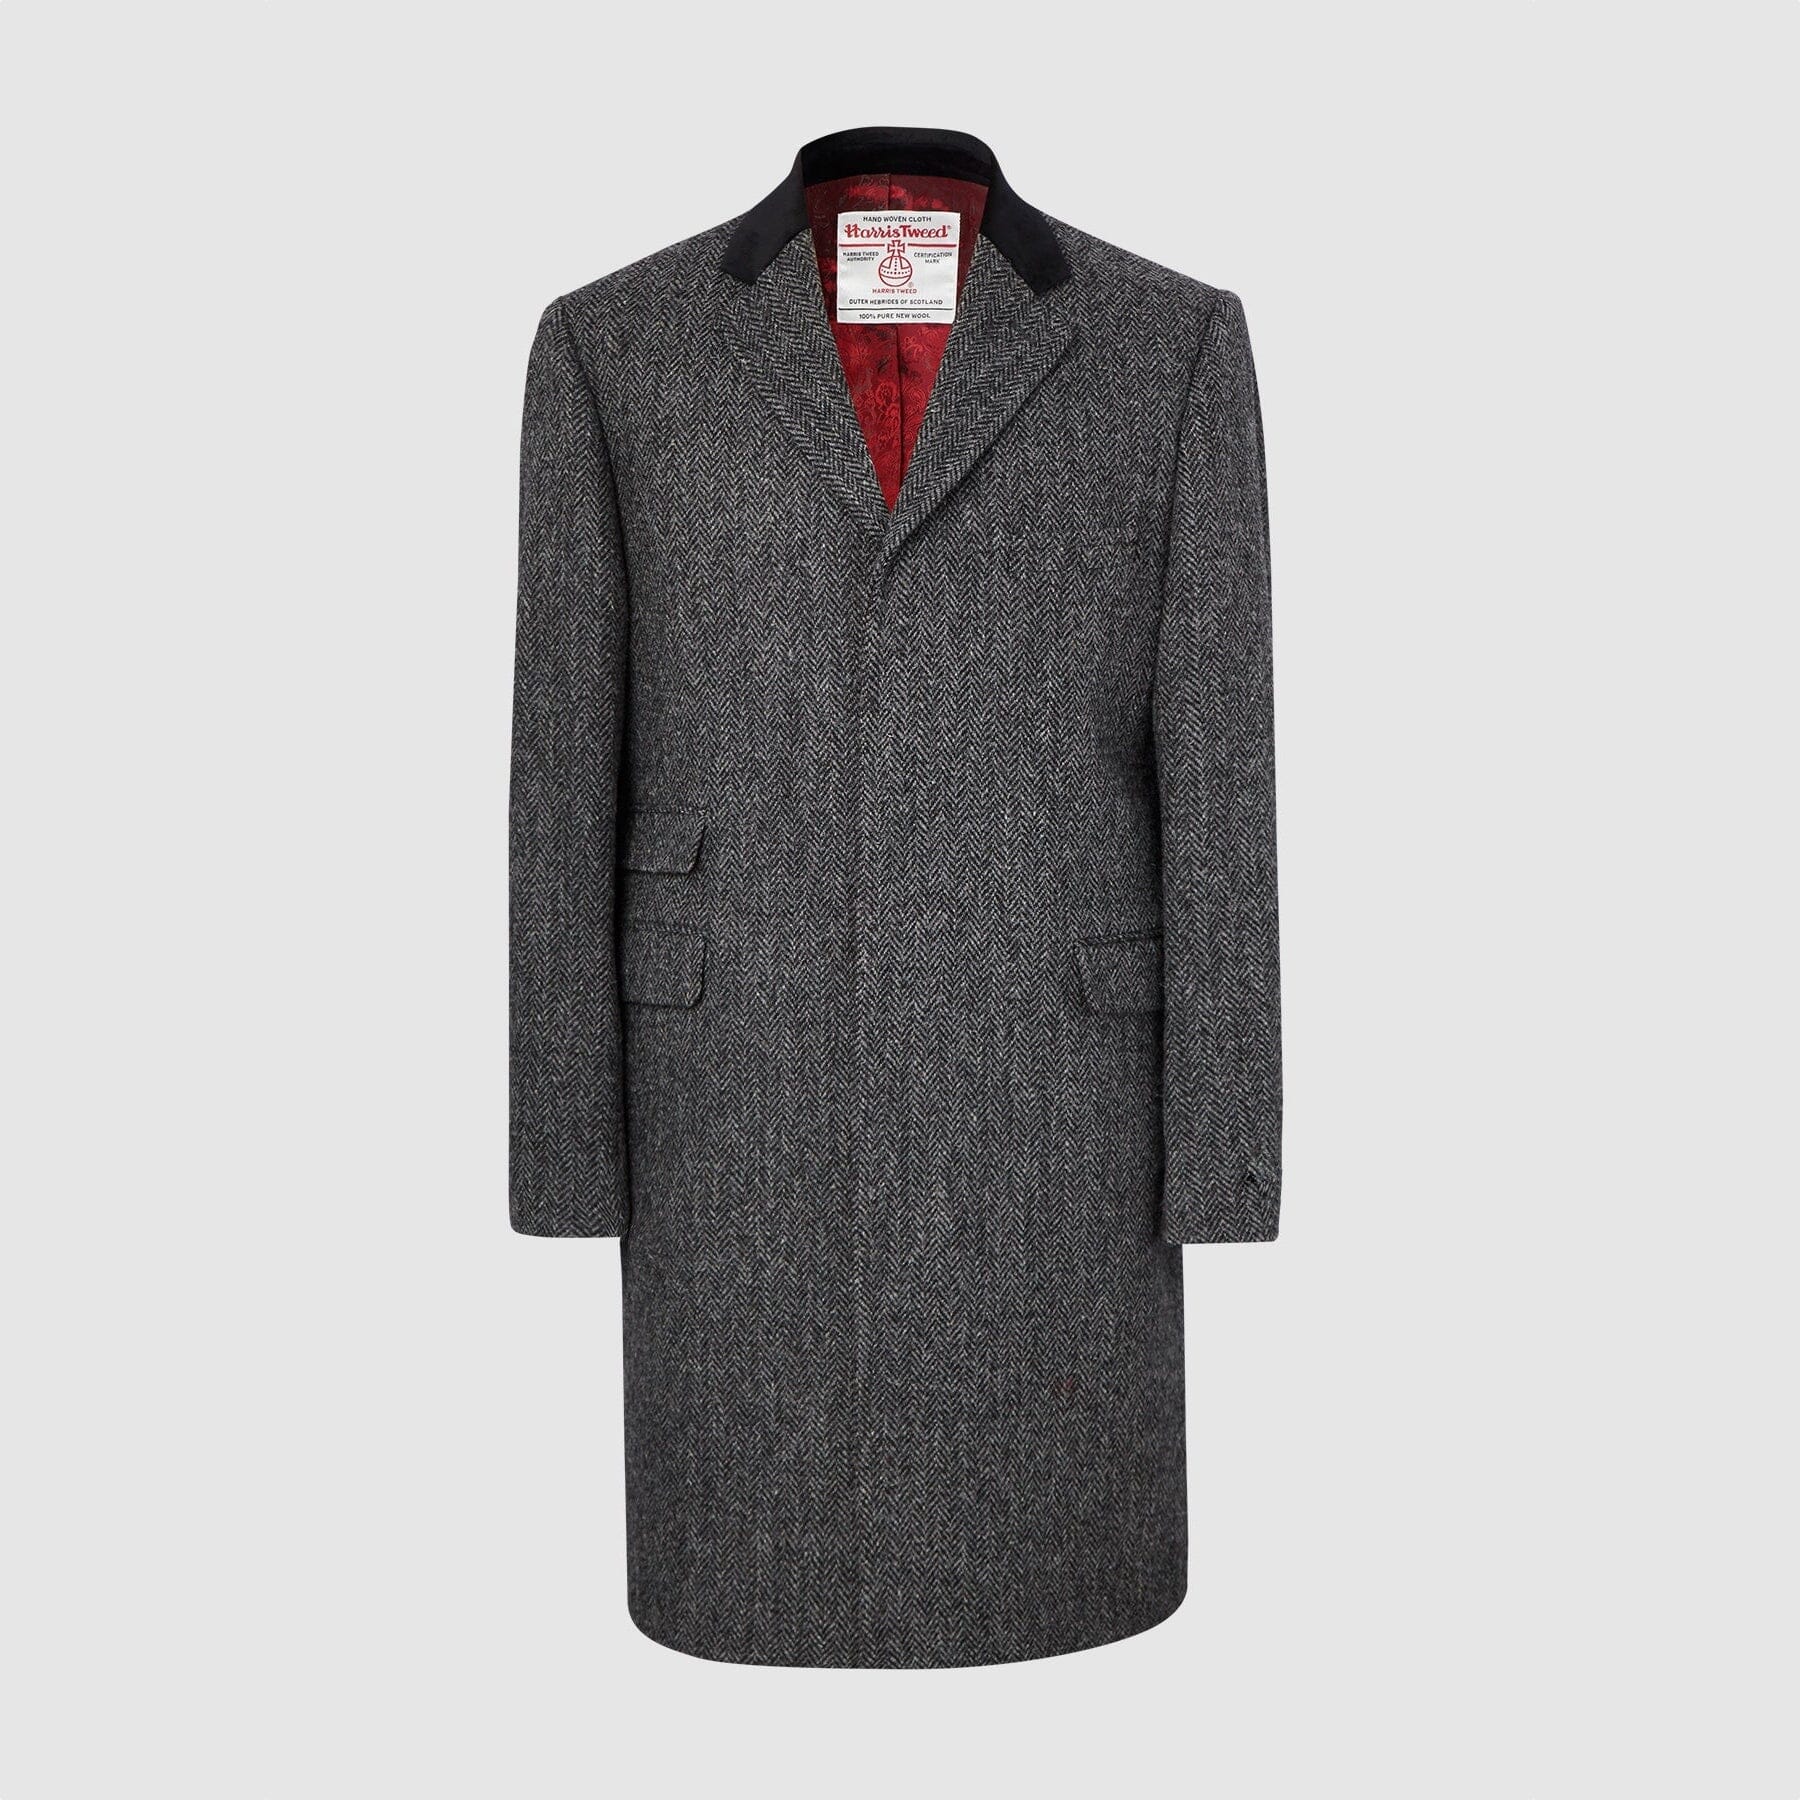 Billede af Chelsea Mens Overcoat frakke, grå herringbone, Harris Tweed - 40 UK (50 EU)